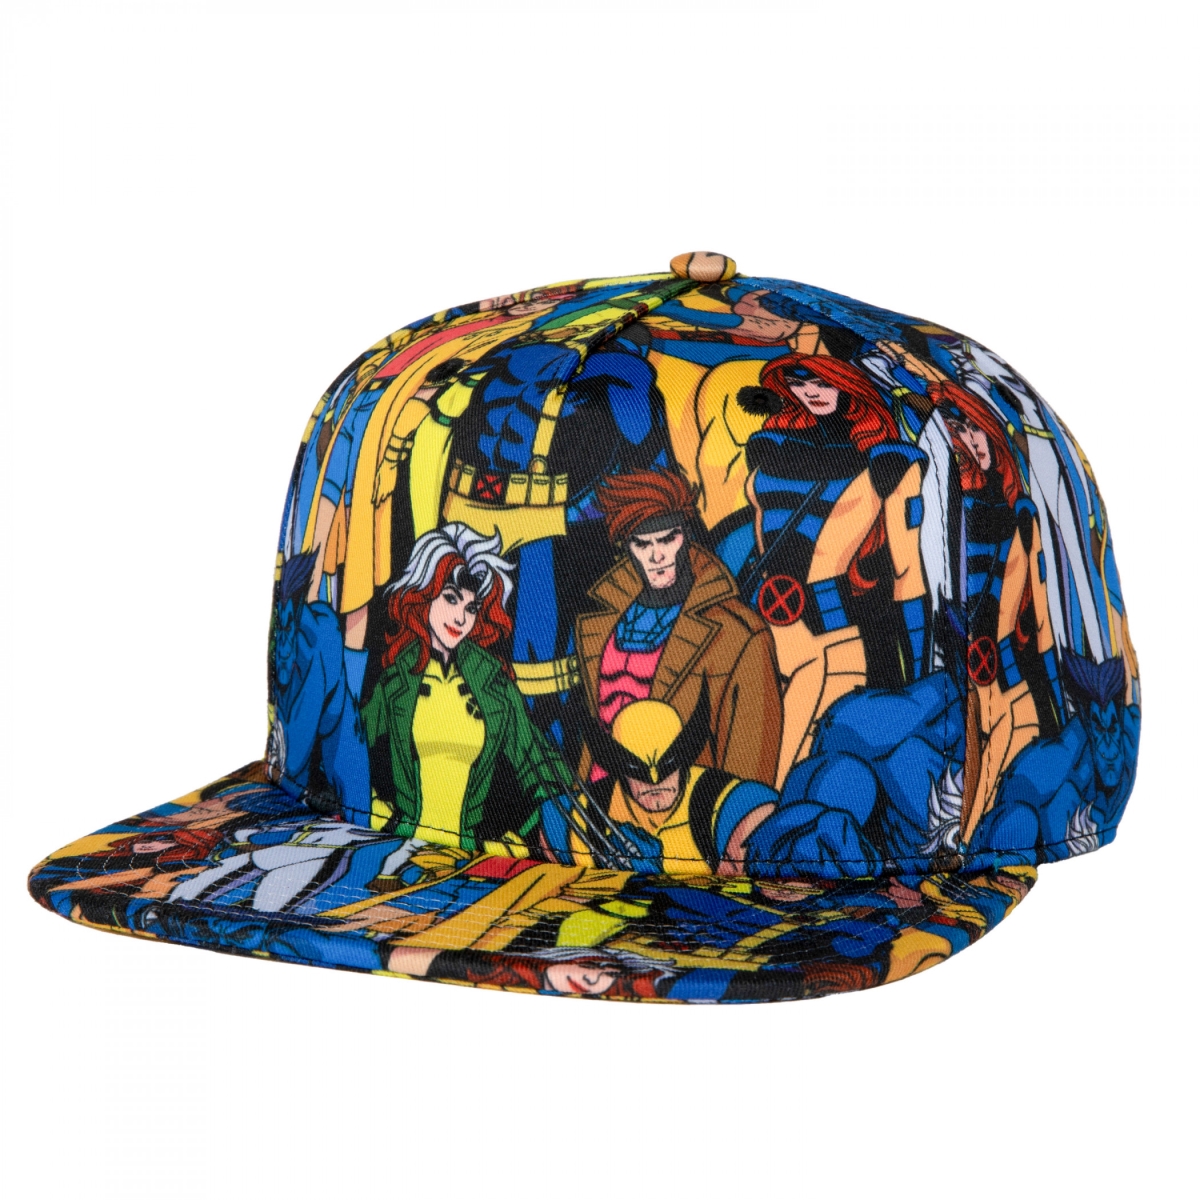 Picture of X-Men 869324 X-Men Mutants Collage Flat Brim Snapback Hat